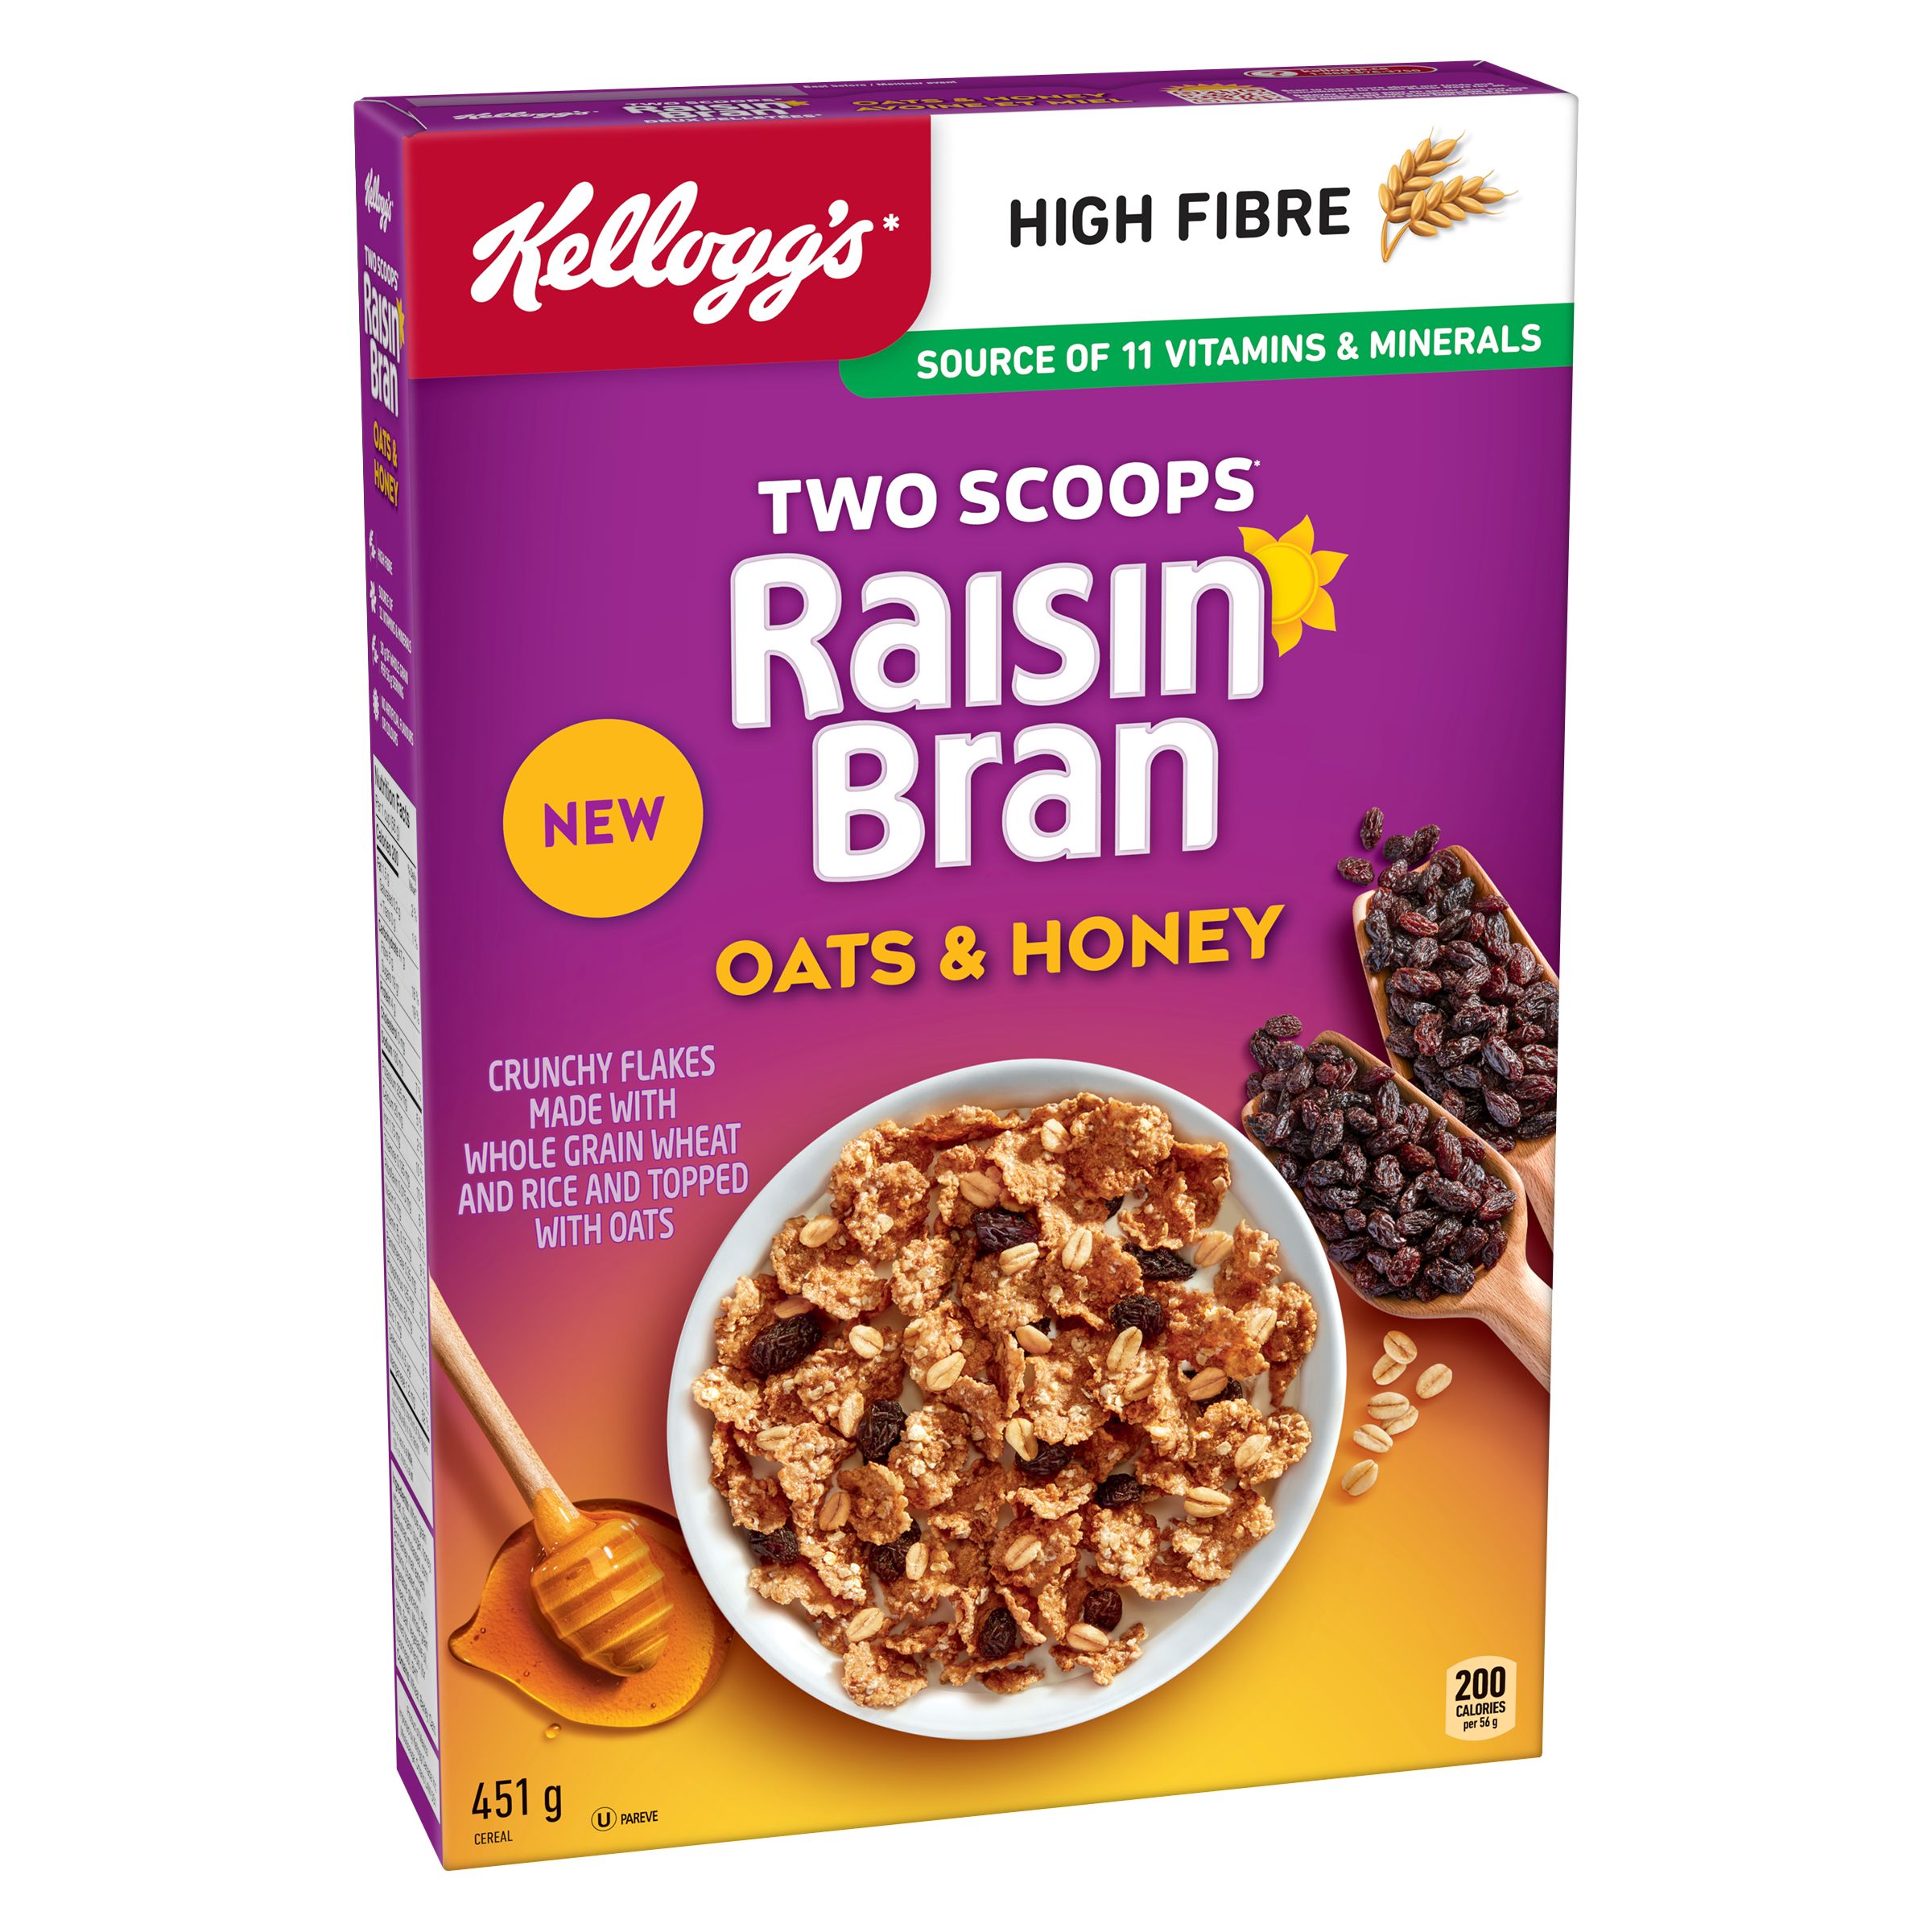 Two Scoops* Raisin Bran Oats & Honey Cereal - SmartLabel™